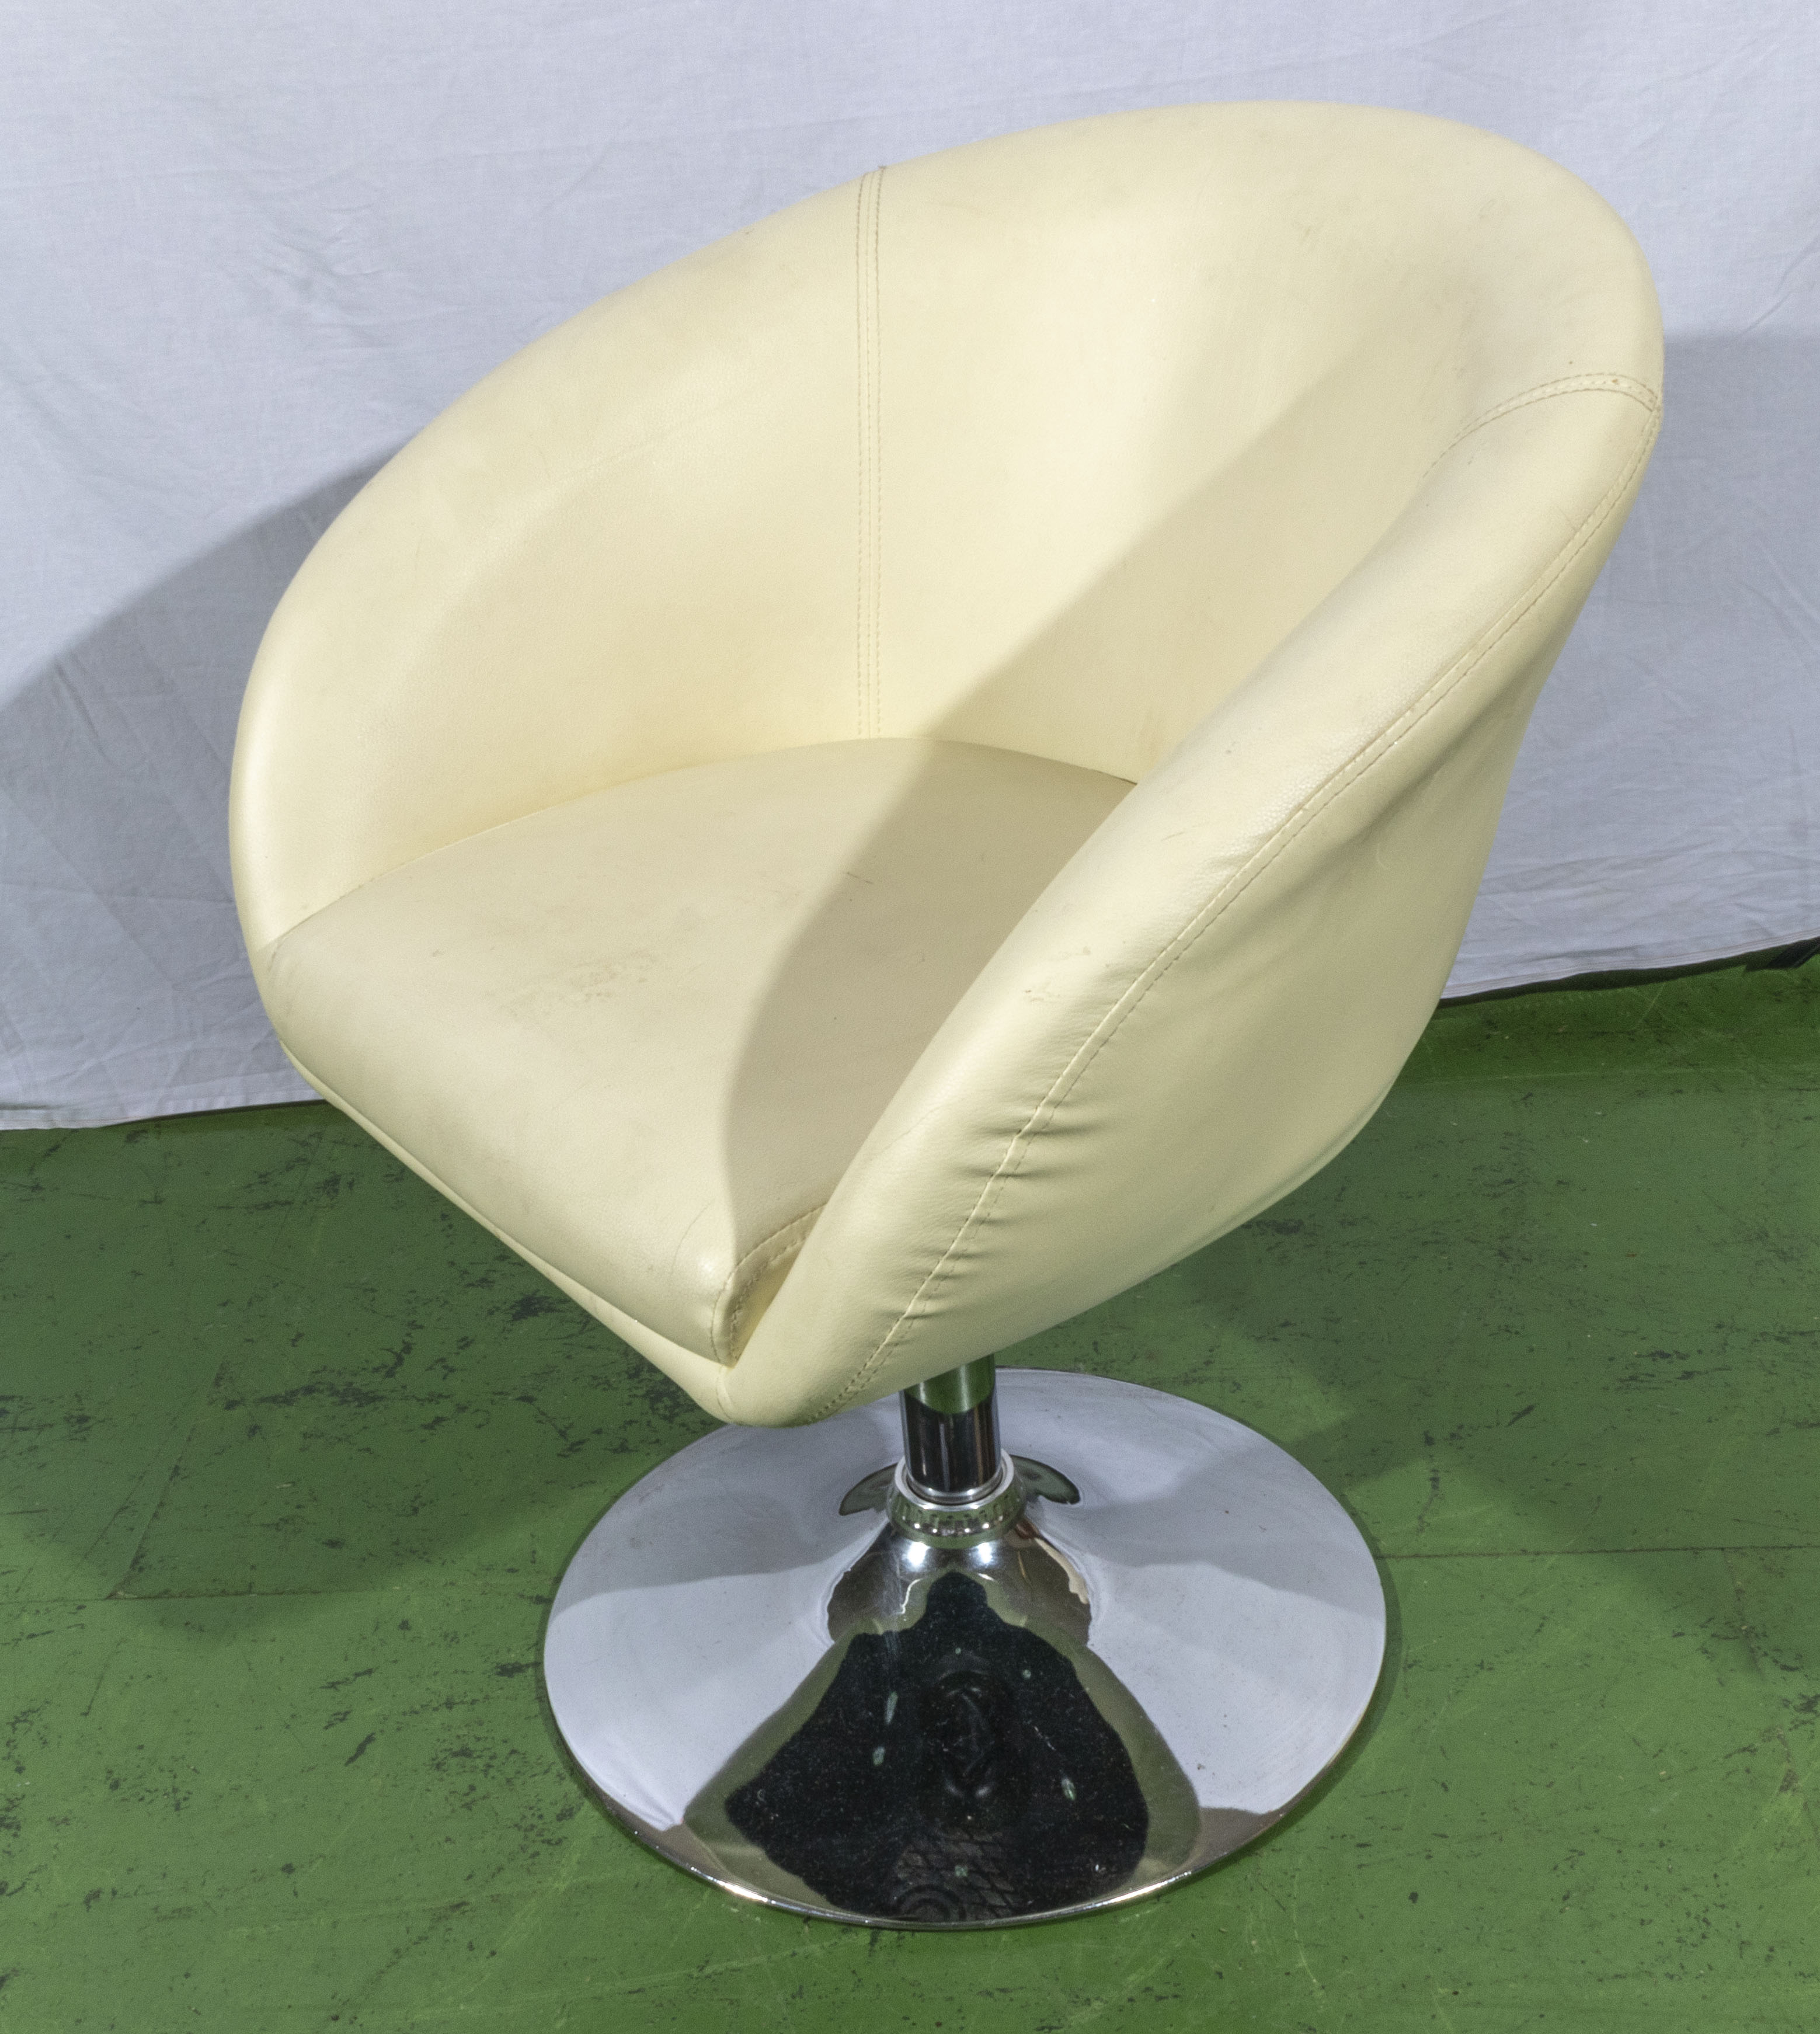 A retro swivel chair